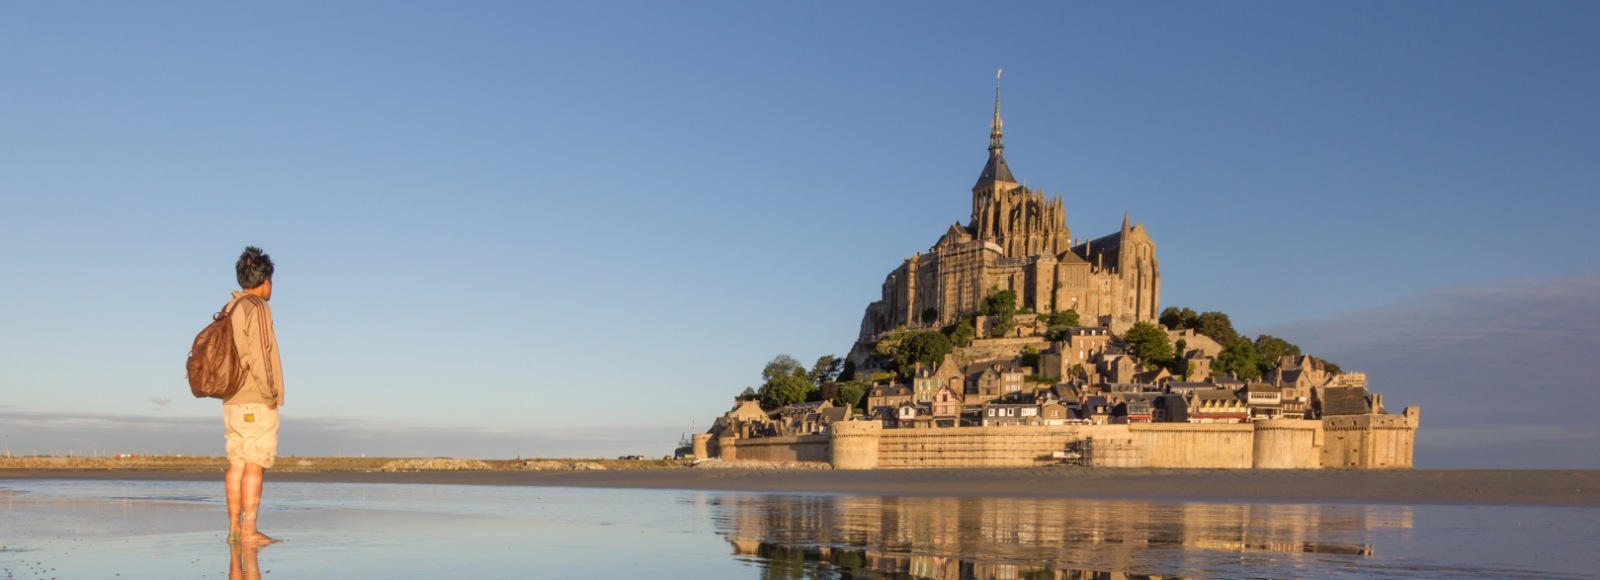 the Mont Saint Michel